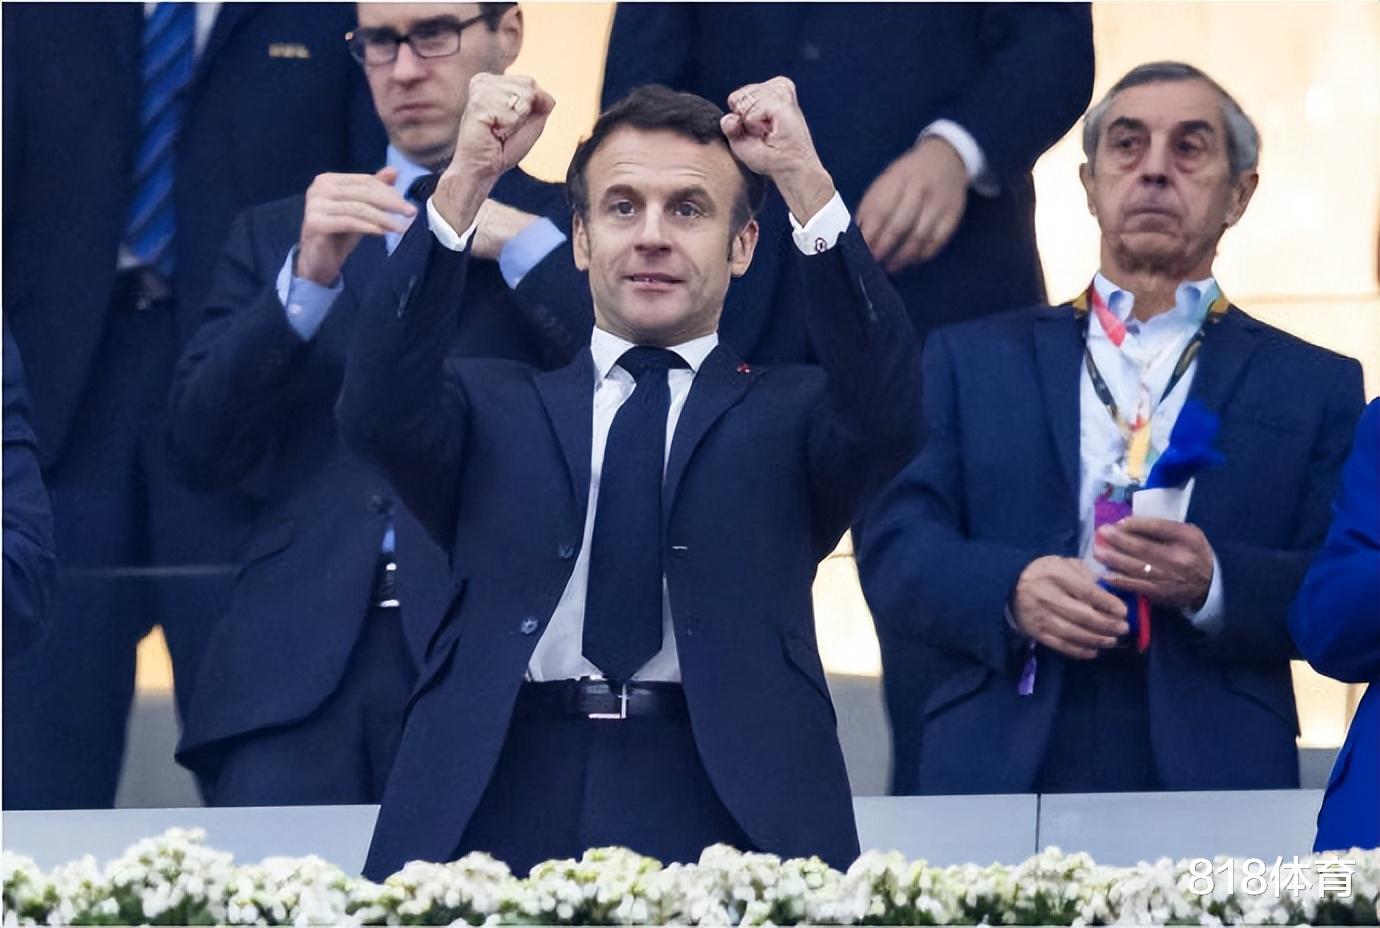 排面! 博格巴坎特坐法国总统马克龙专机去看决赛, 齐达内本泽马拒绝邀请